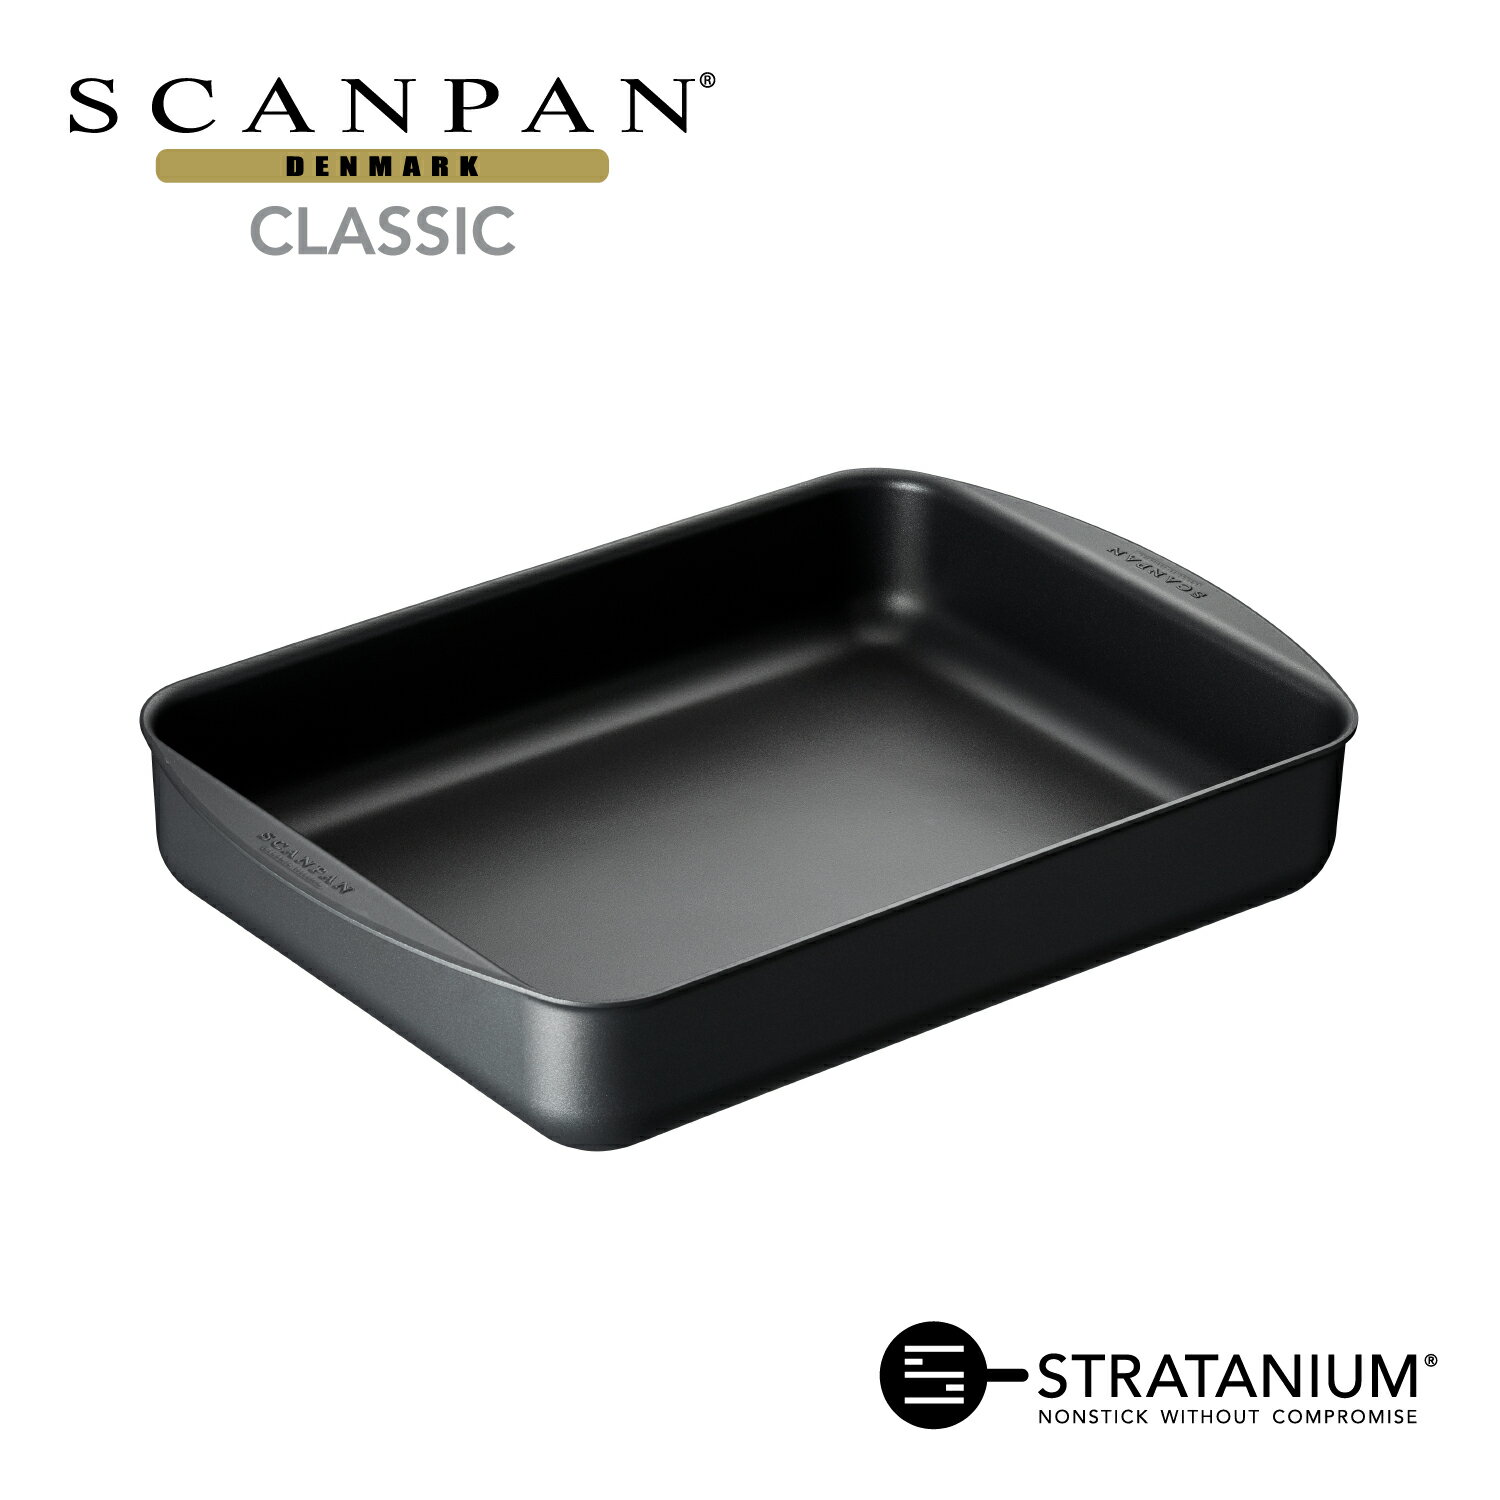 スキャンパン Classic シリーズ ロースティングパン 39x27cm ロースティングパン 四角 ロースター 大皿料理 環境に配慮 オーブン調理 ノンスティック 安全なフライパン フッ素加工 SCANPAN デンマーク STRATANIUM